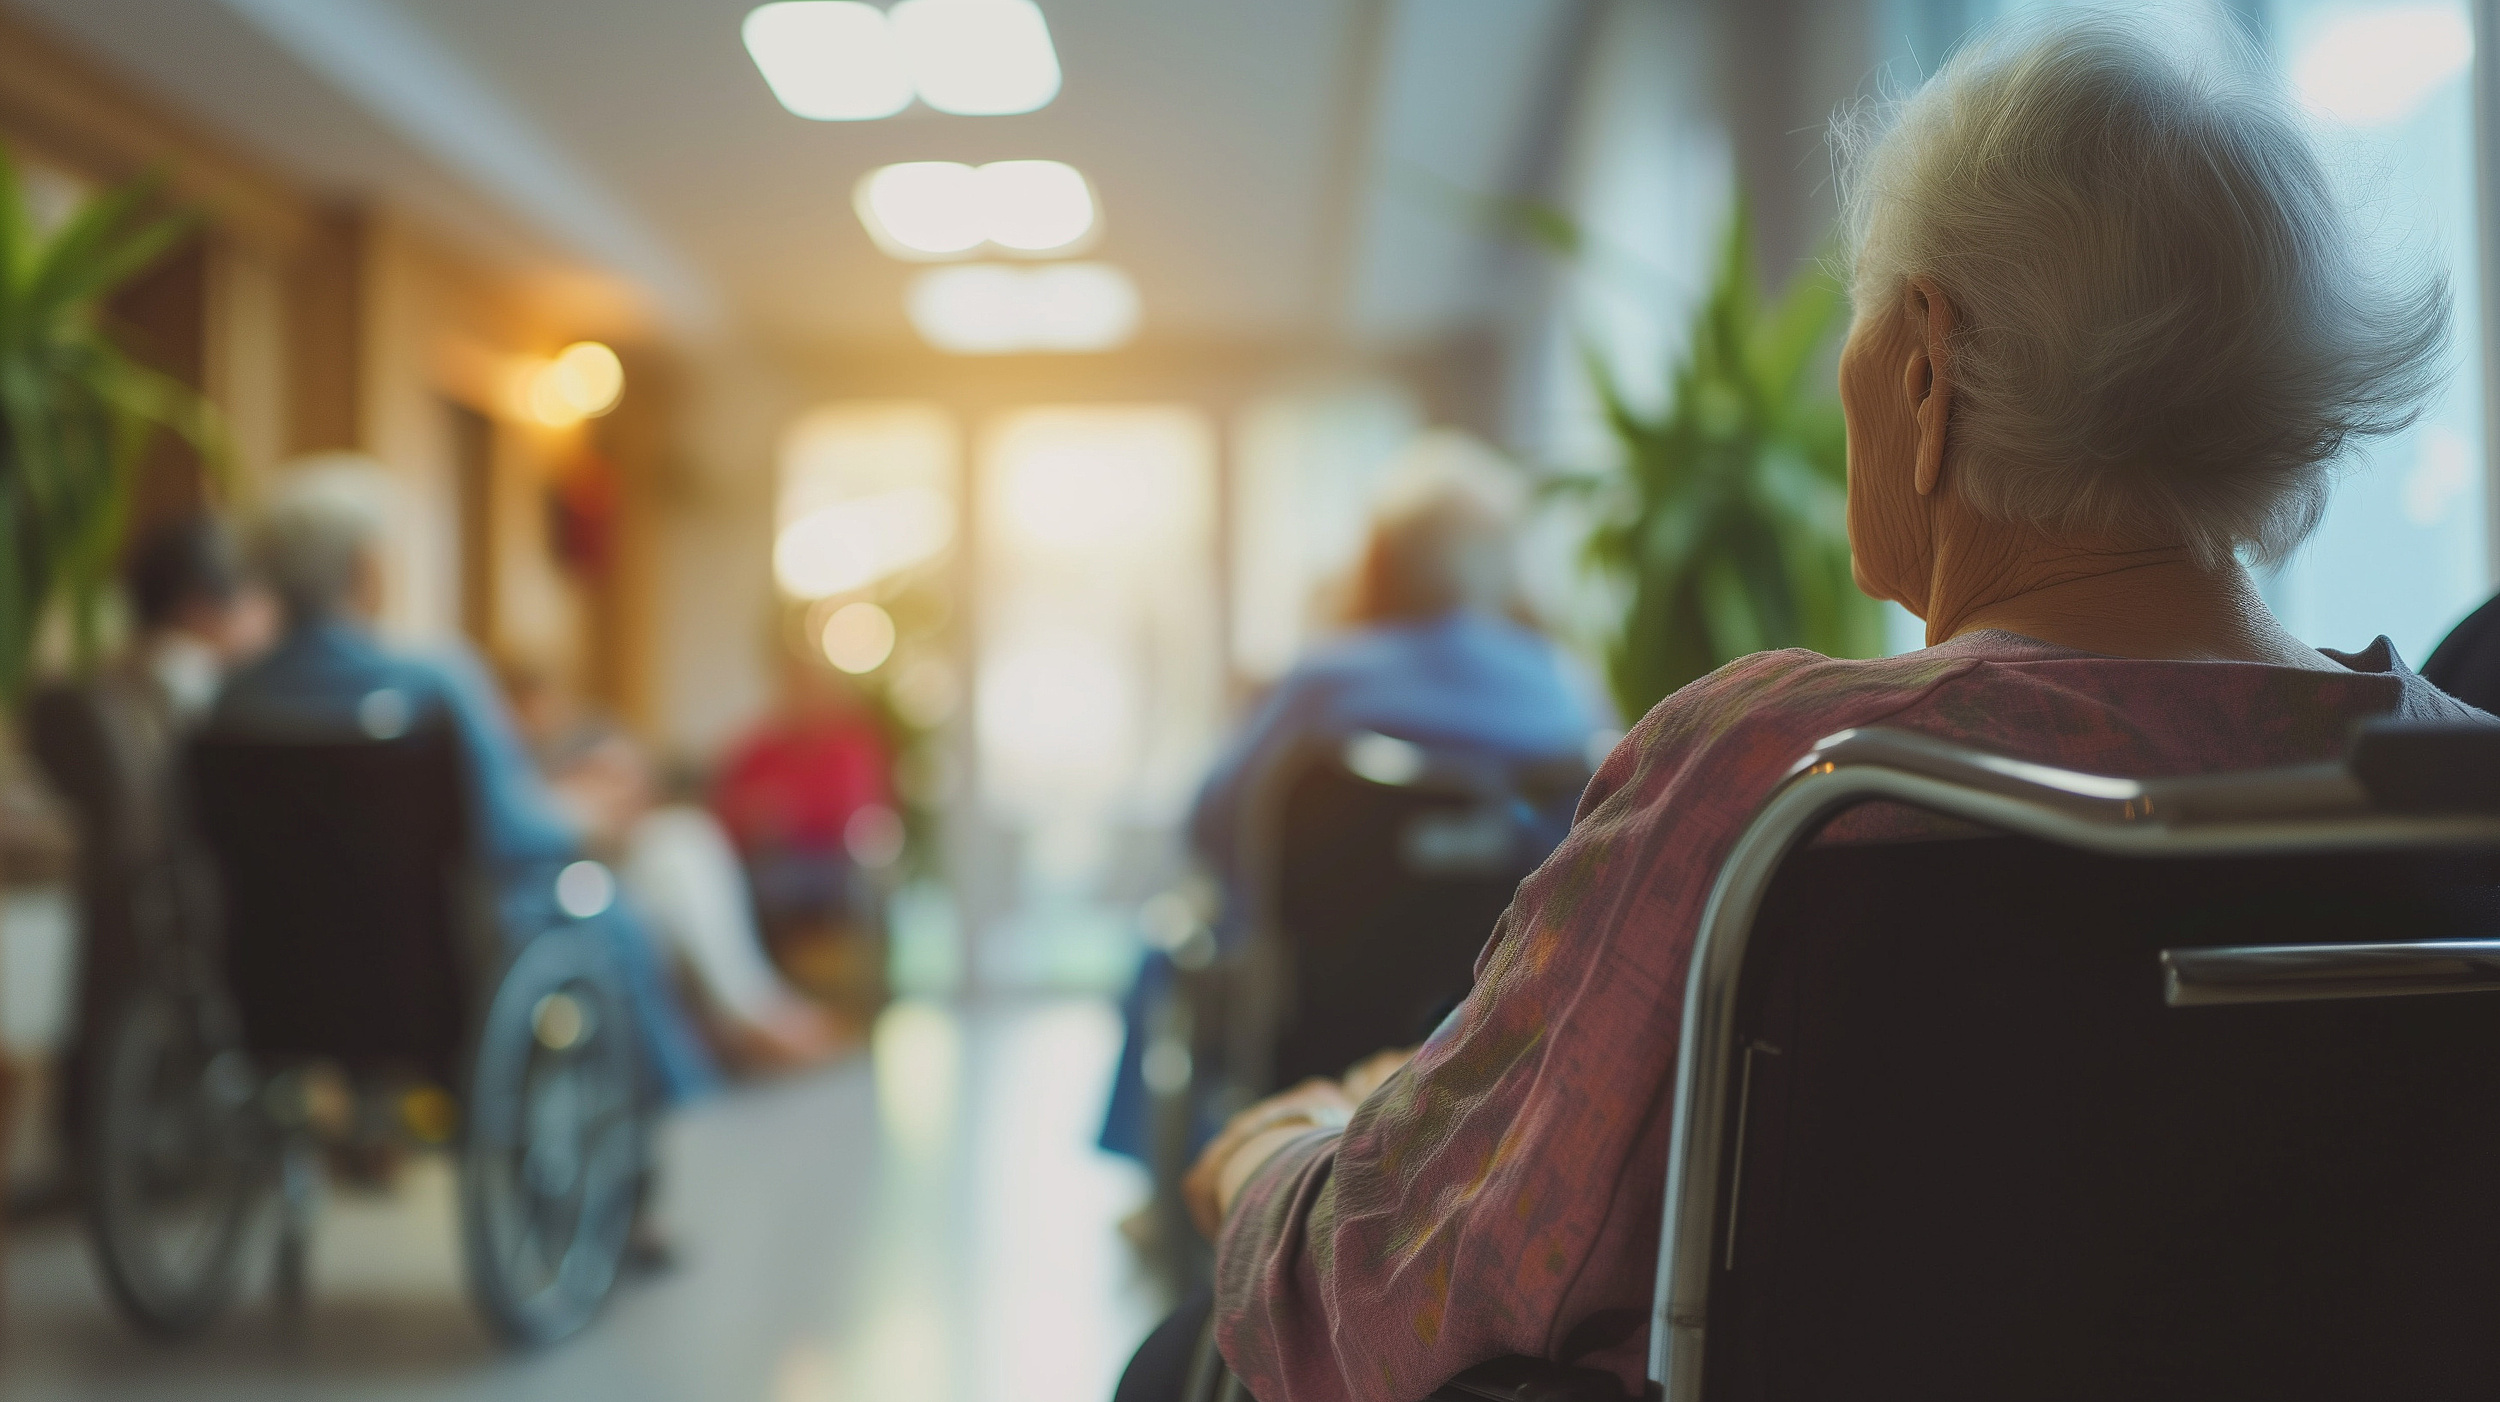 Aufenthaltsbereich im Pflegeheim, Rückenansicht einer im Rollstuhl sitzenden Pflegeheimbewohnerin mit weißen kurzen Haaren; verschwommen im Hintergrund weitere Personen in Rollstühlen